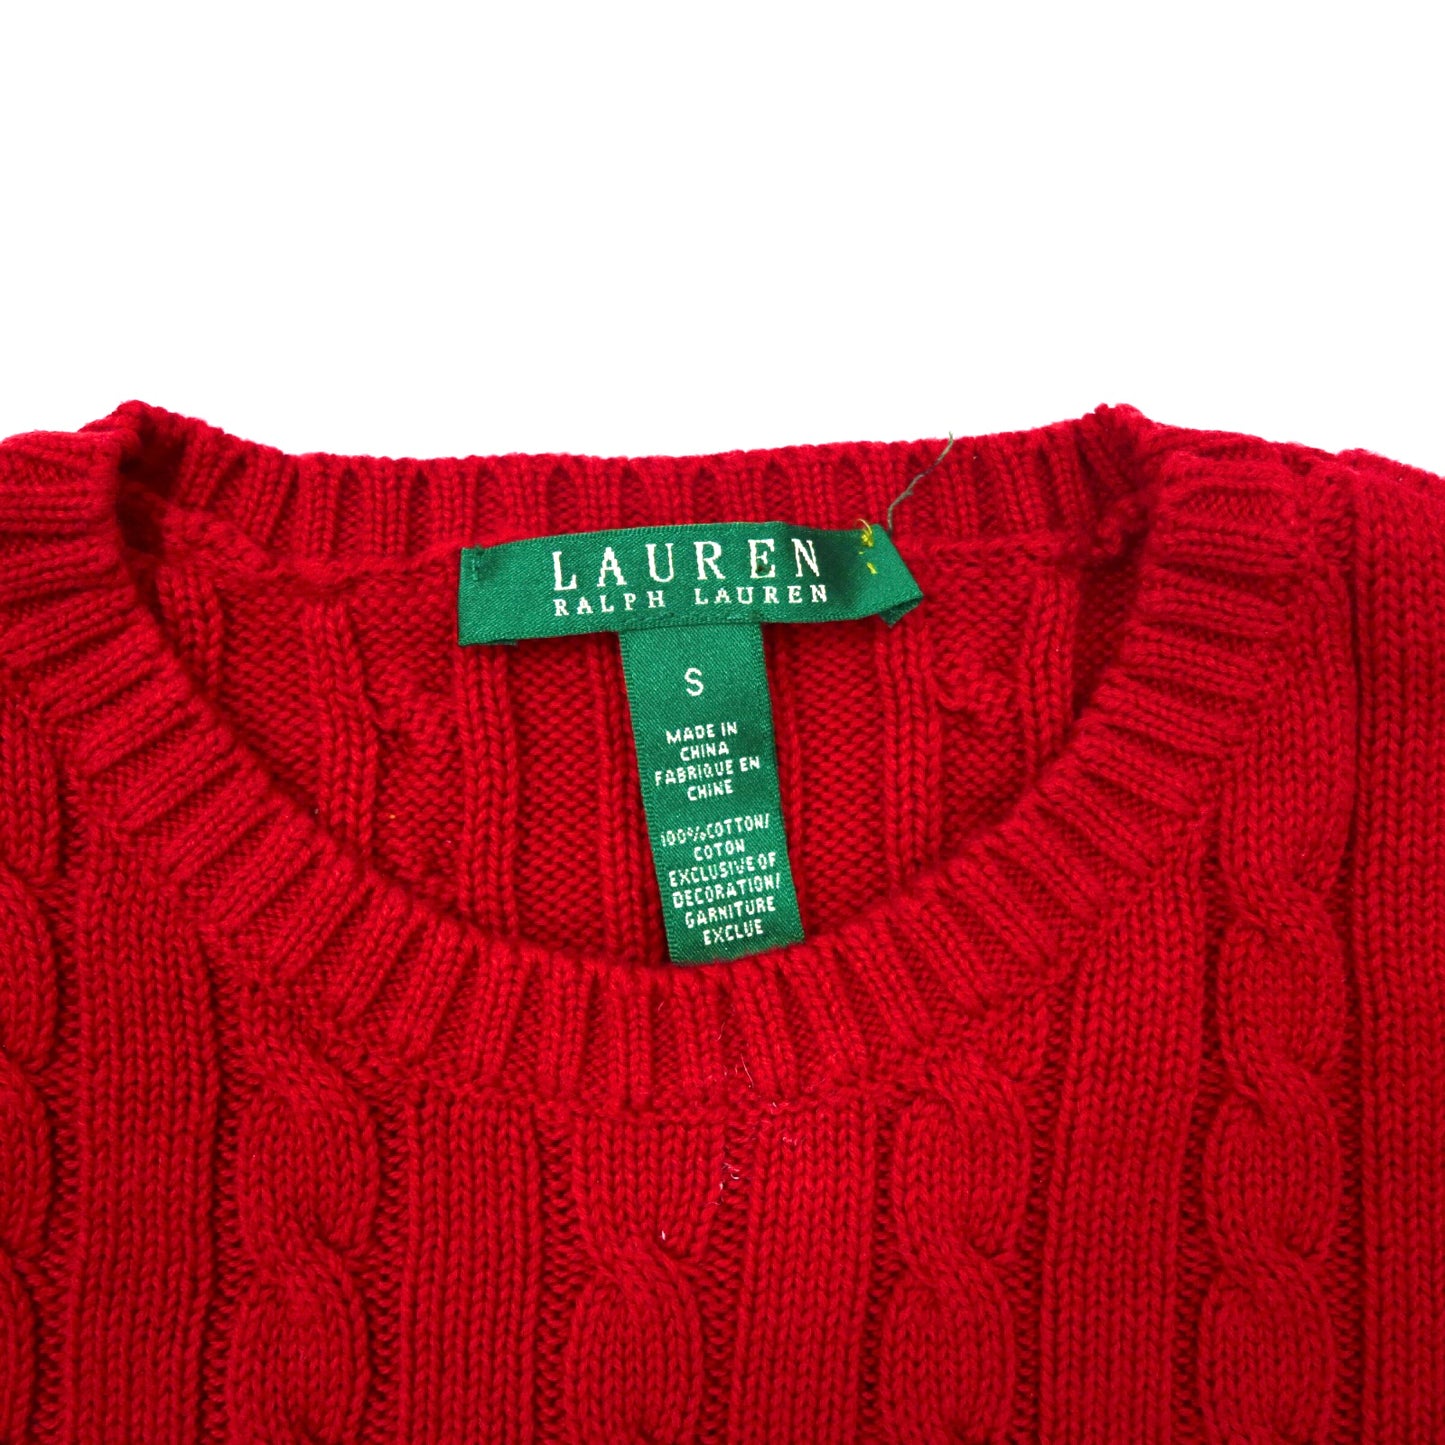 LAUREN RALPH LAUREN コットンニット セーター S レッド ケーブル編み スモールロゴ刺繍